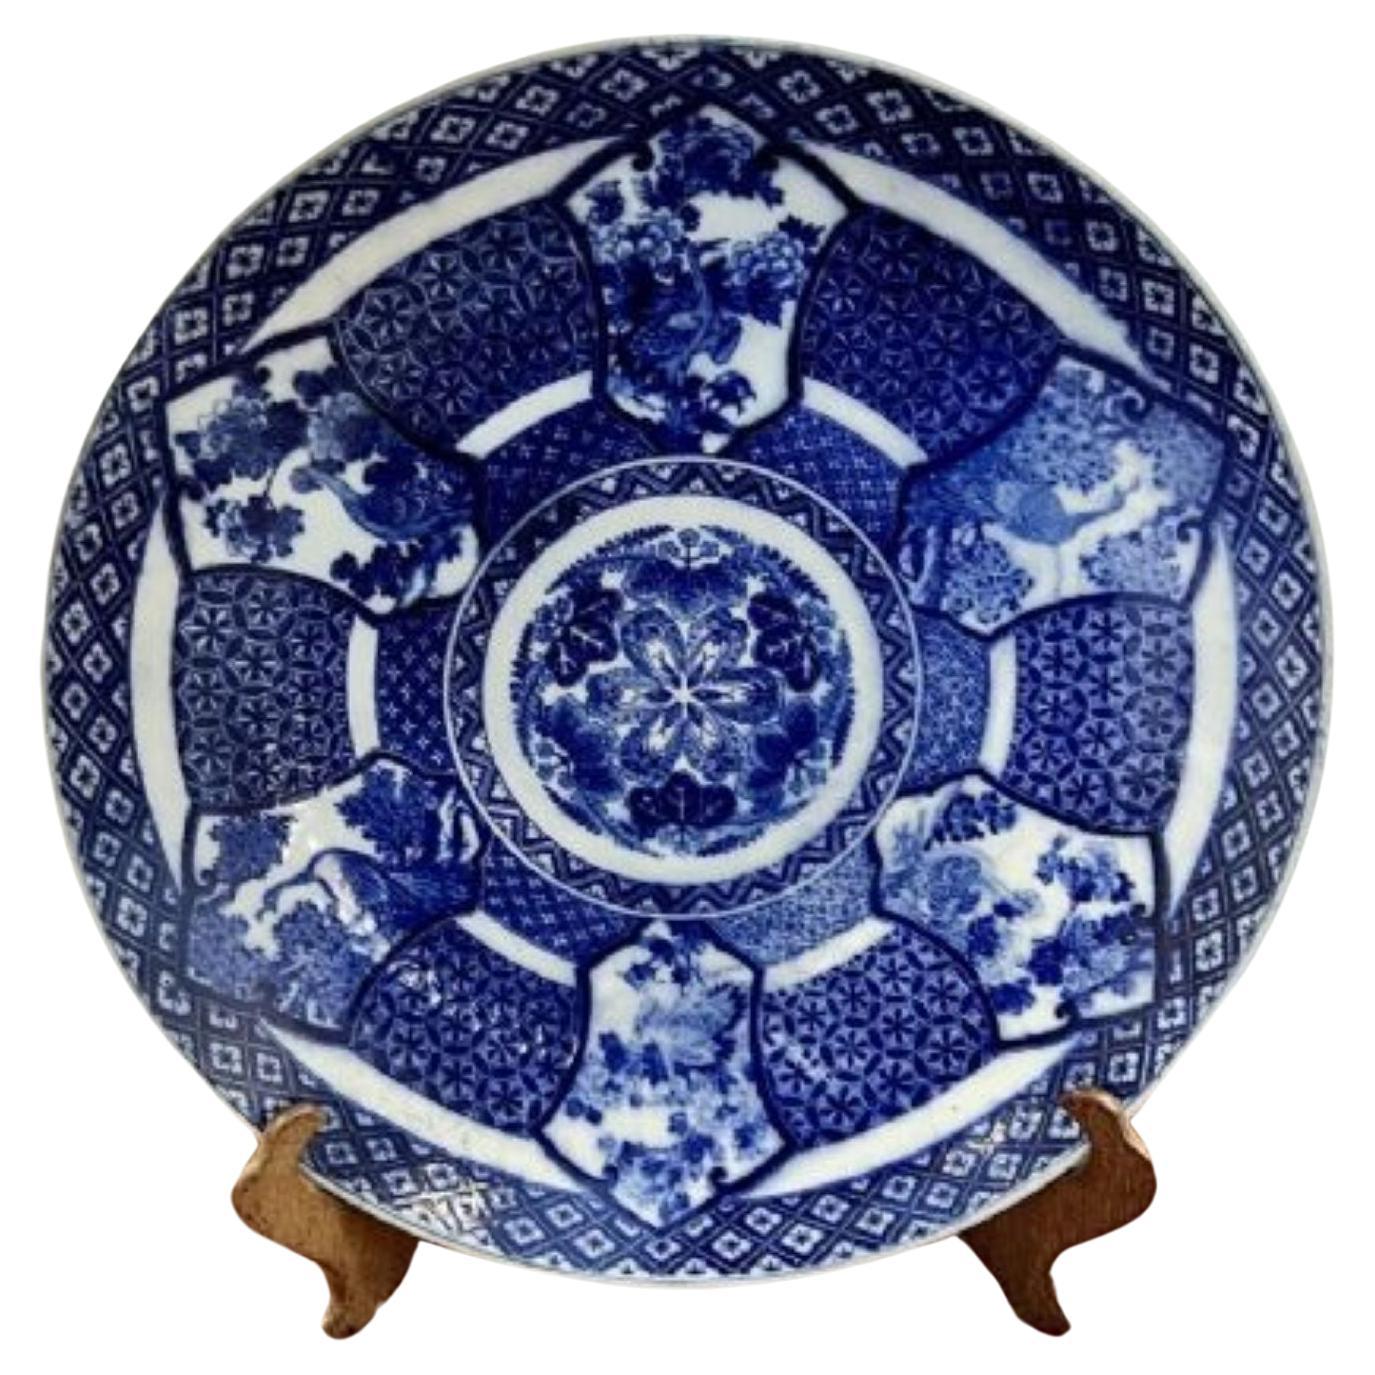 Großer antiker japanischer blau-weißer Imari-Teller in hoher Qualität